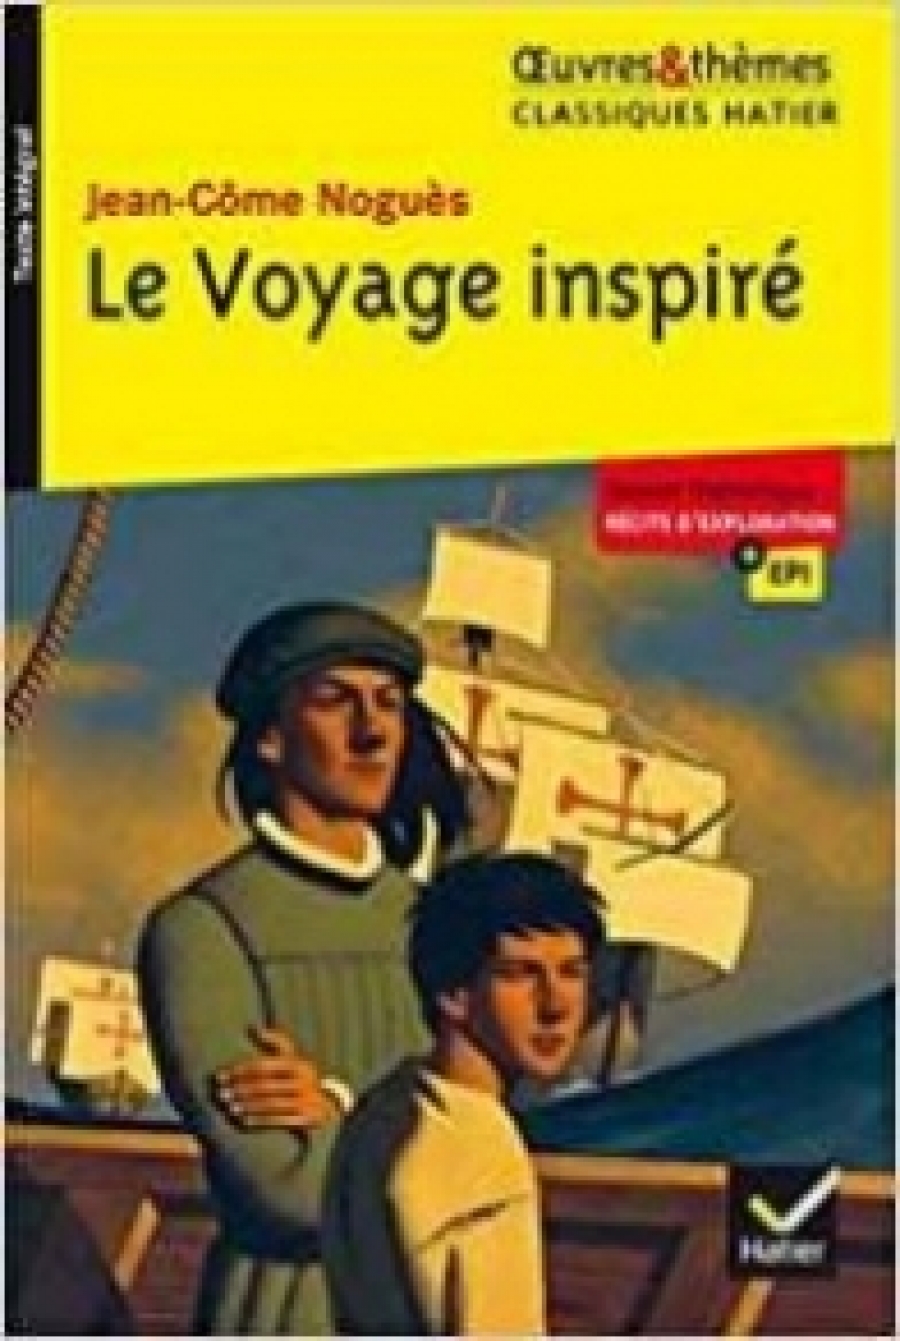 Nogues J-C. Le Voyage inspire 